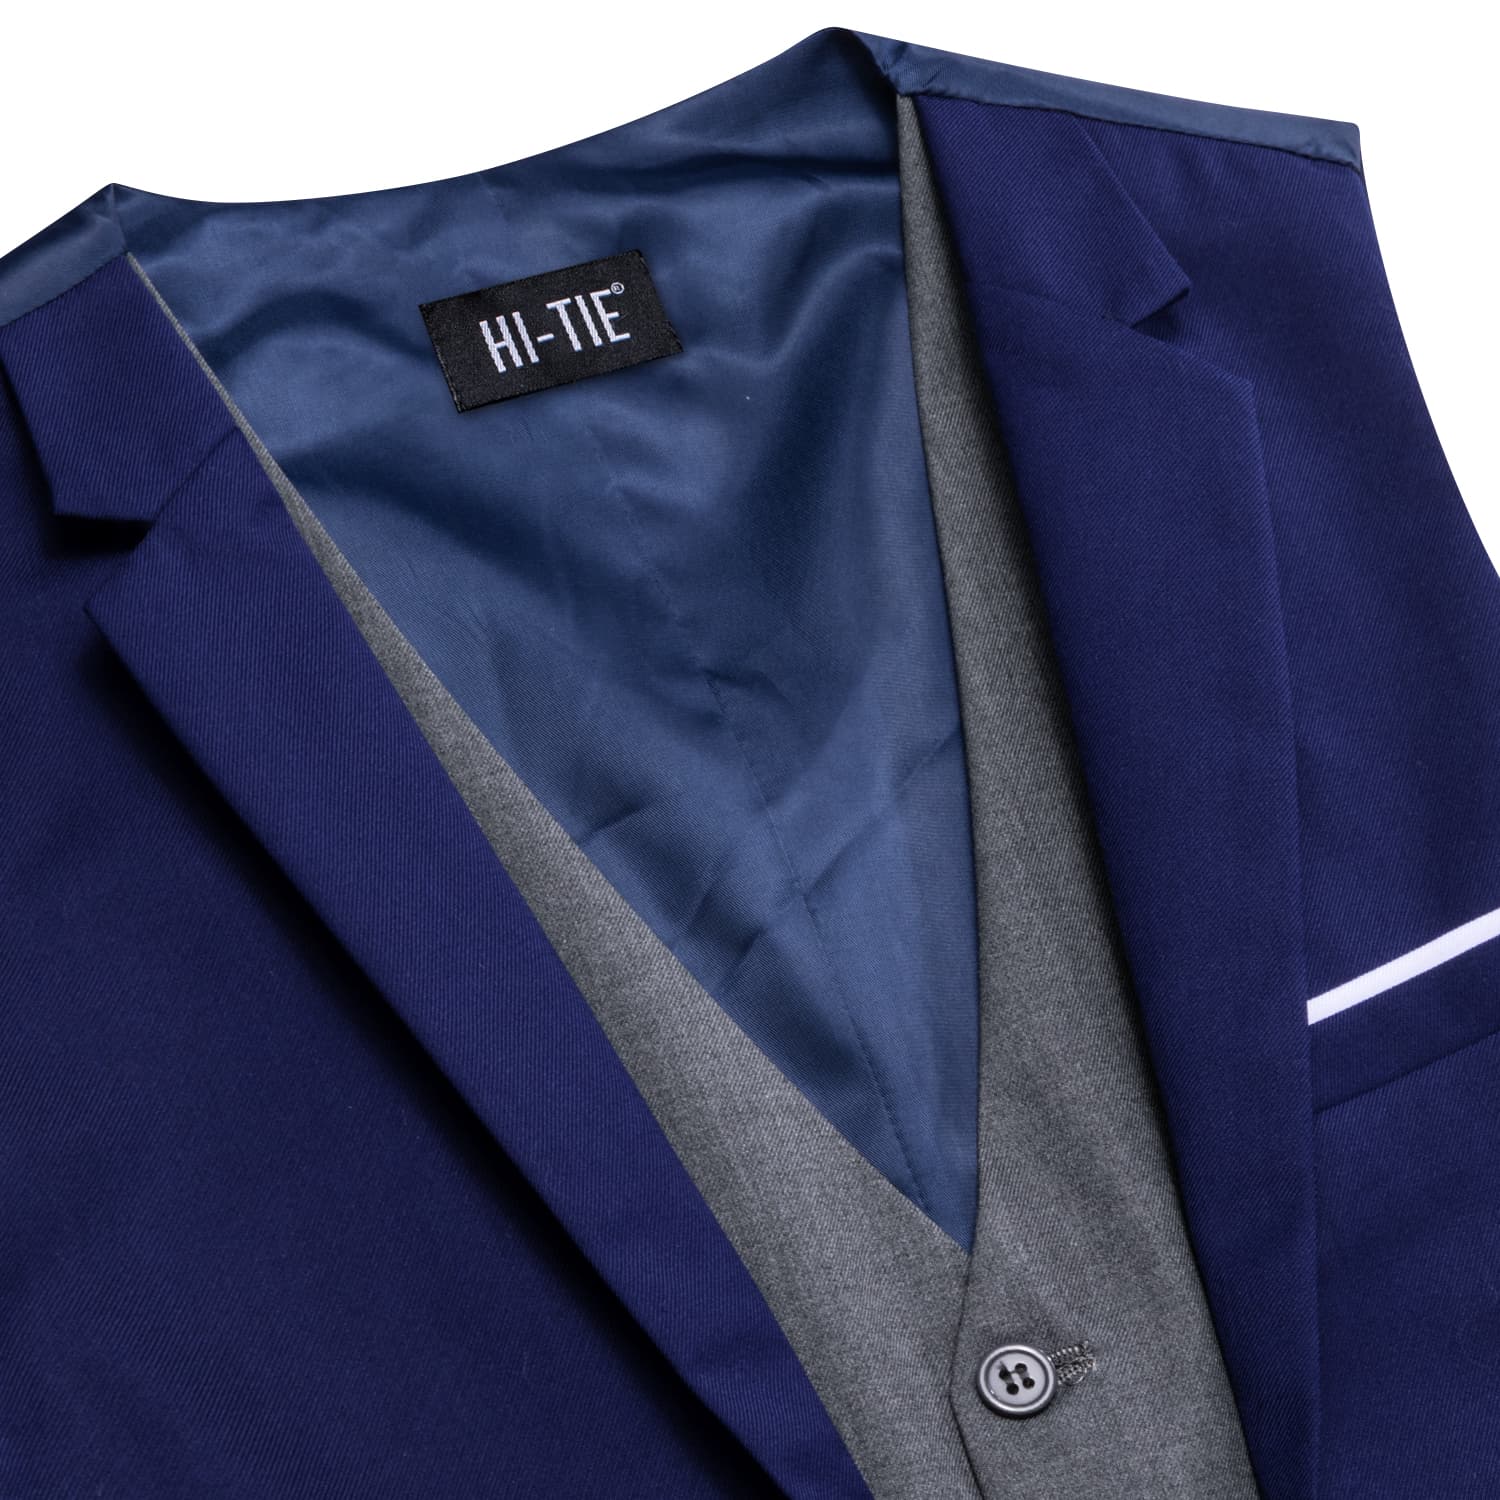 Hi-Tie Suit Vest Layered Waistcoat Navy Blue Gray Vests for Wedding